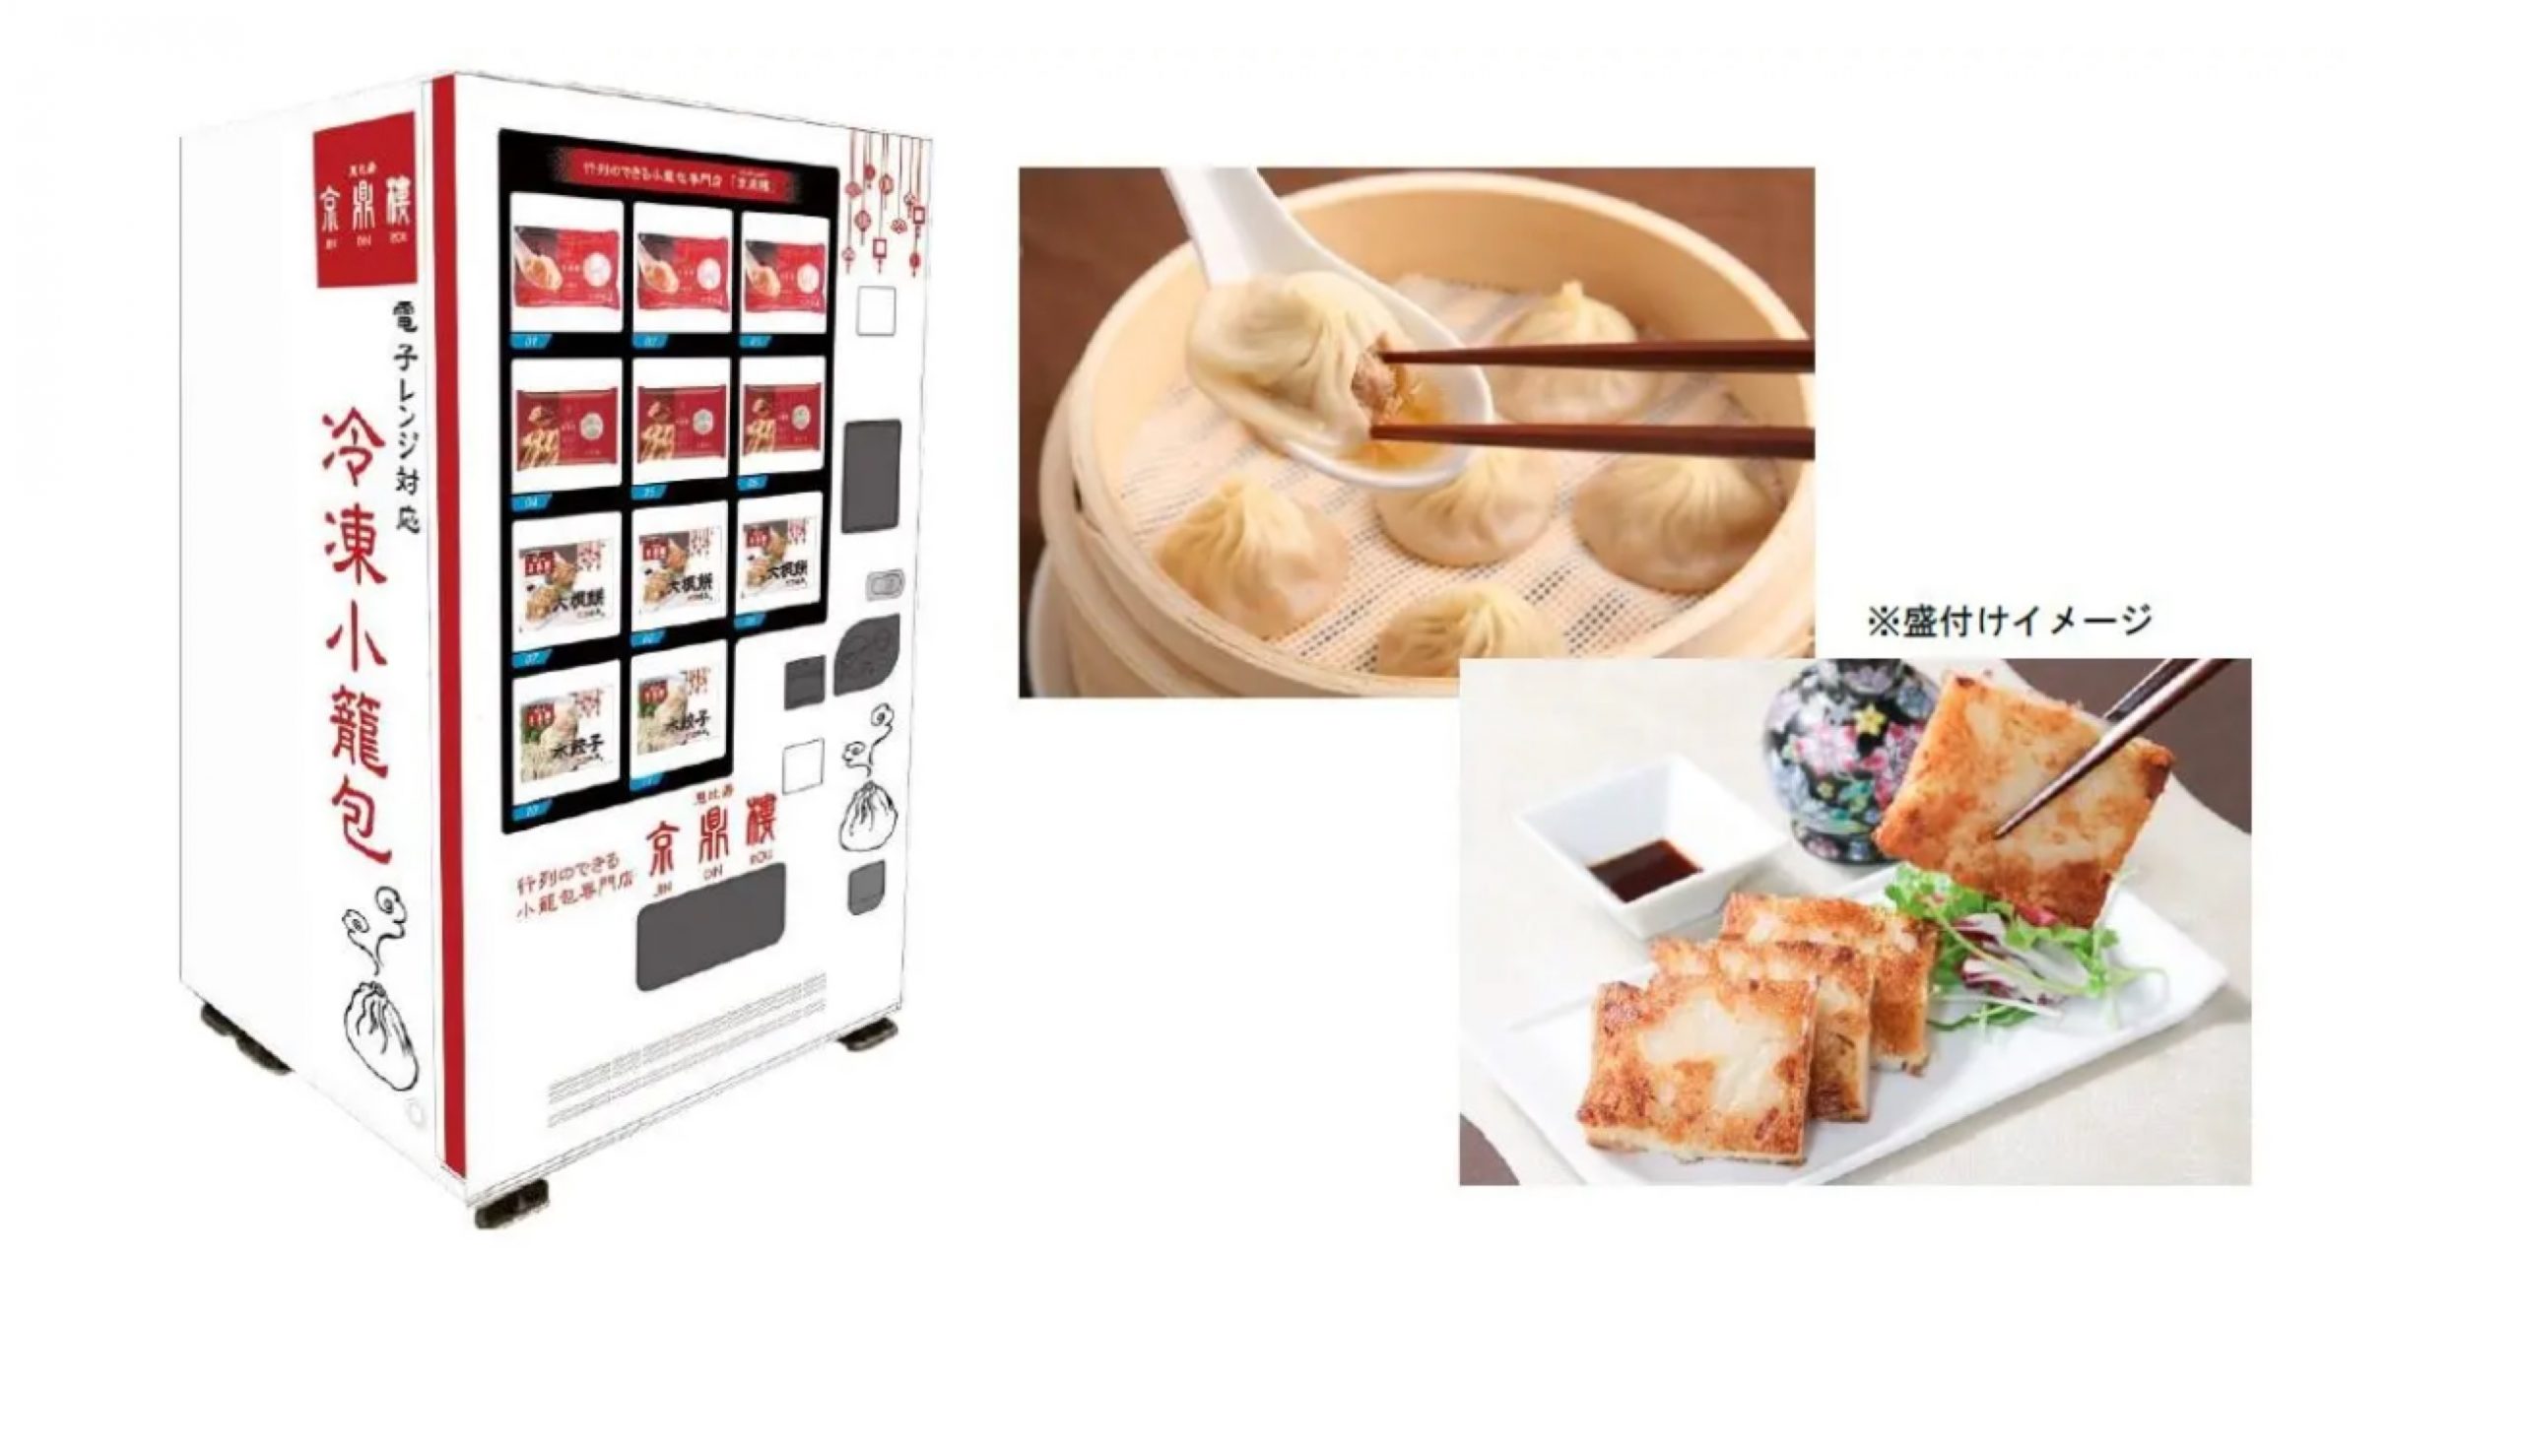 東京メトロ、小籠包の名店「京鼎樓」の自販機を設置　点心など購入可能